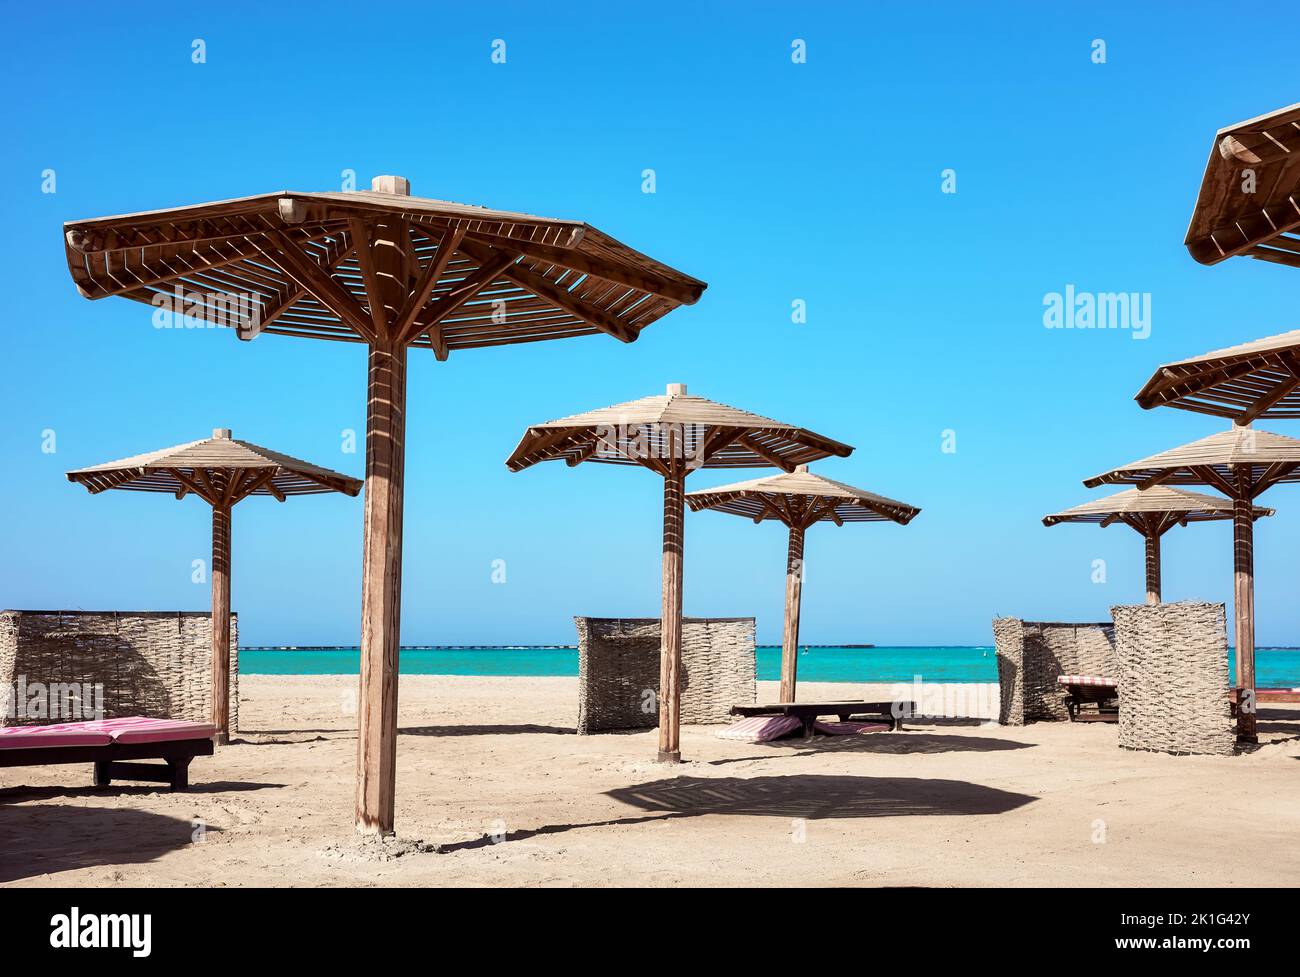 Hölzerne Sonnenschirme, Sonnenliegen und Windschutzscheiben am Strand, Marsa Alam, Ägypten. Stockfoto